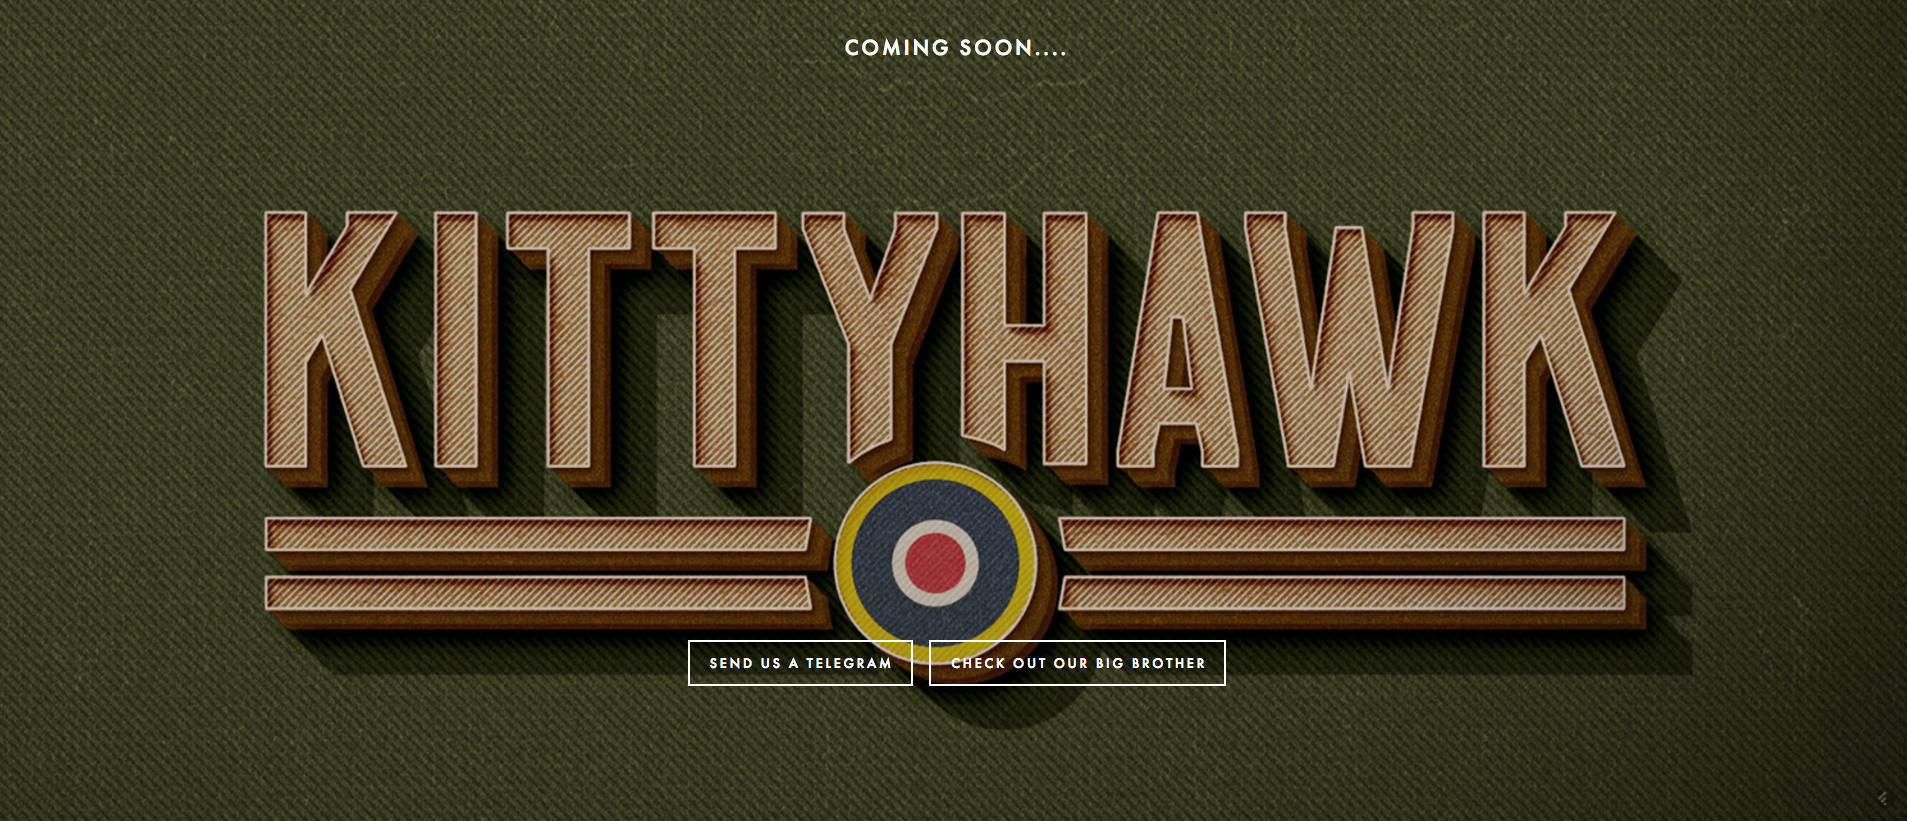 kittyhawk-website